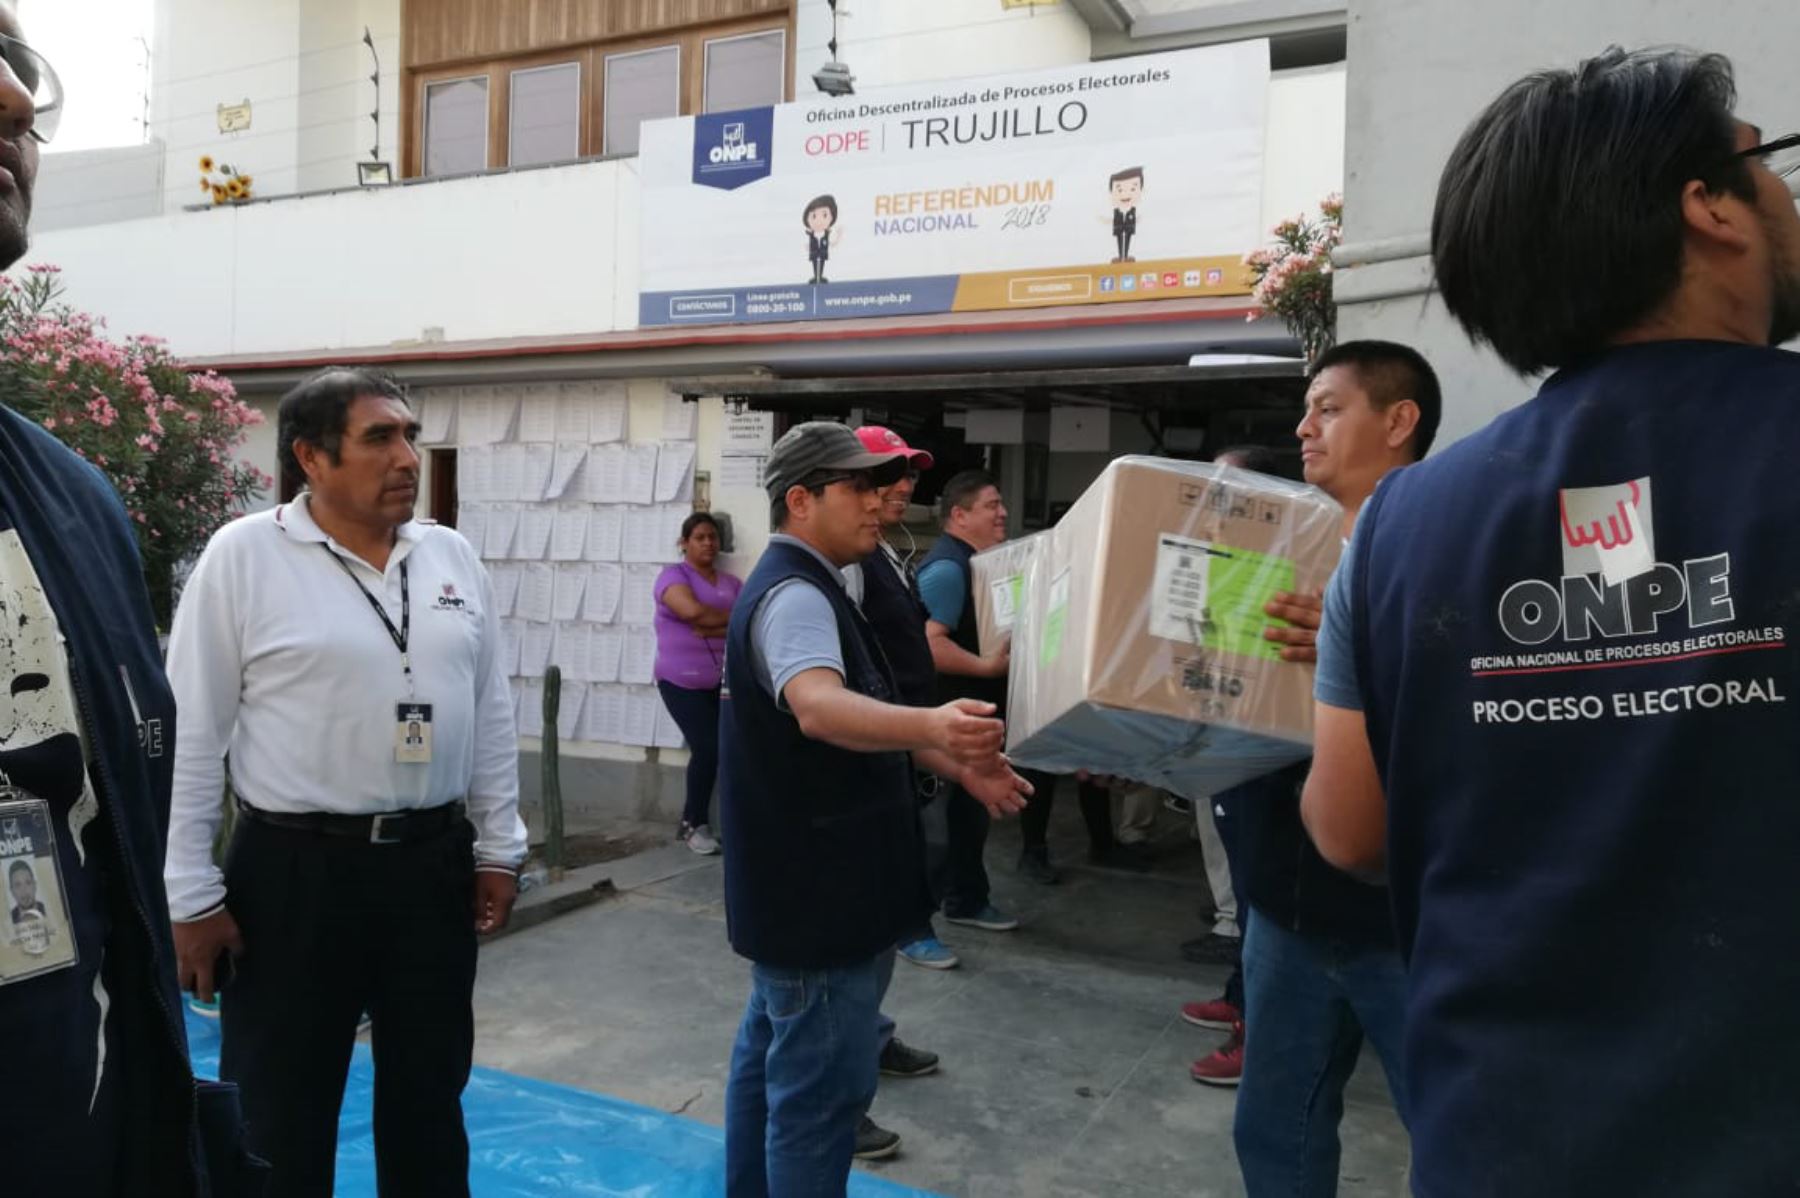 ODPE de Trujillo recibió más de 12,165.85 kilos de material electoral para el Referéndum Nacional 2018 de este domingo.